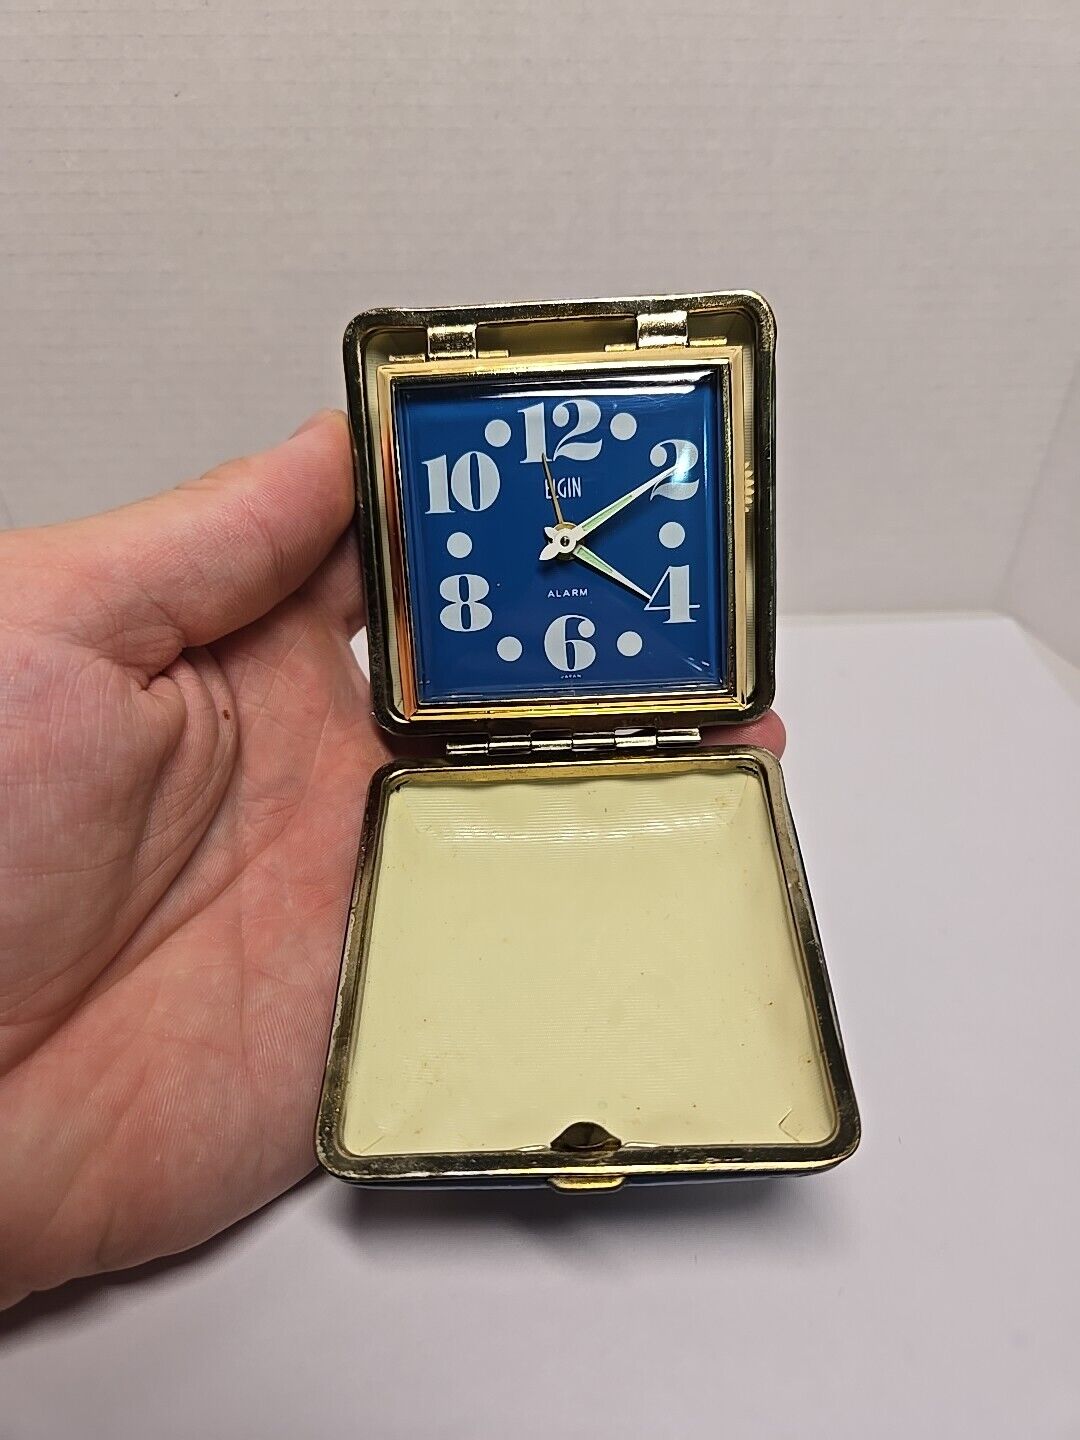 Vintage Elgin Travel Alarm Clock Japan G4705 Blue Case TESTED & WORKING